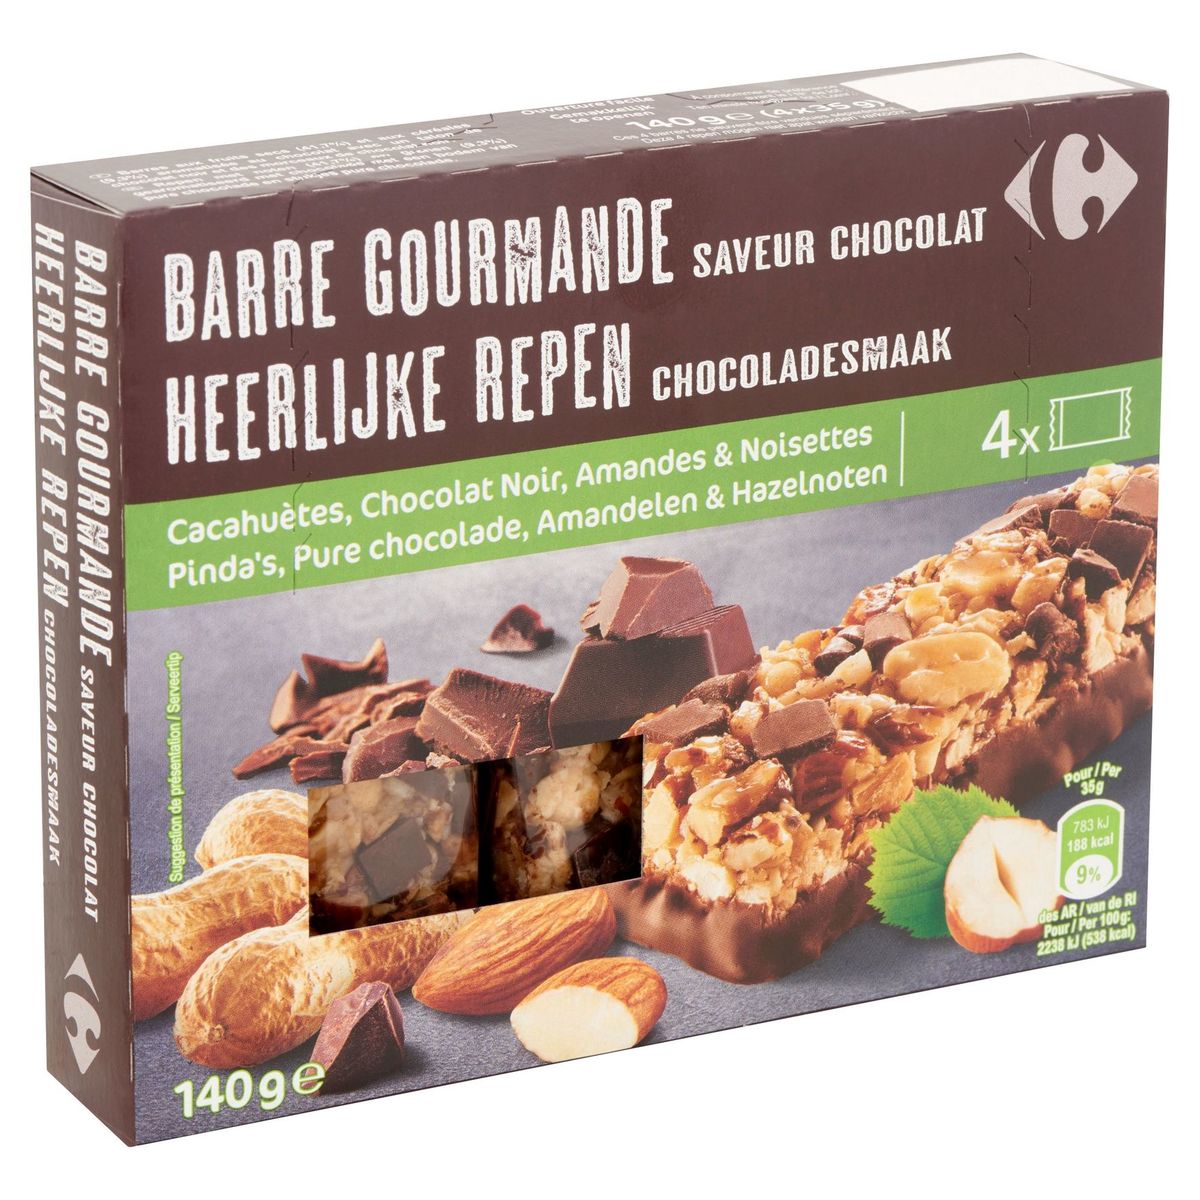 Carrefour Heerlijke Repen Chocoladesmaak 4 x 35 g